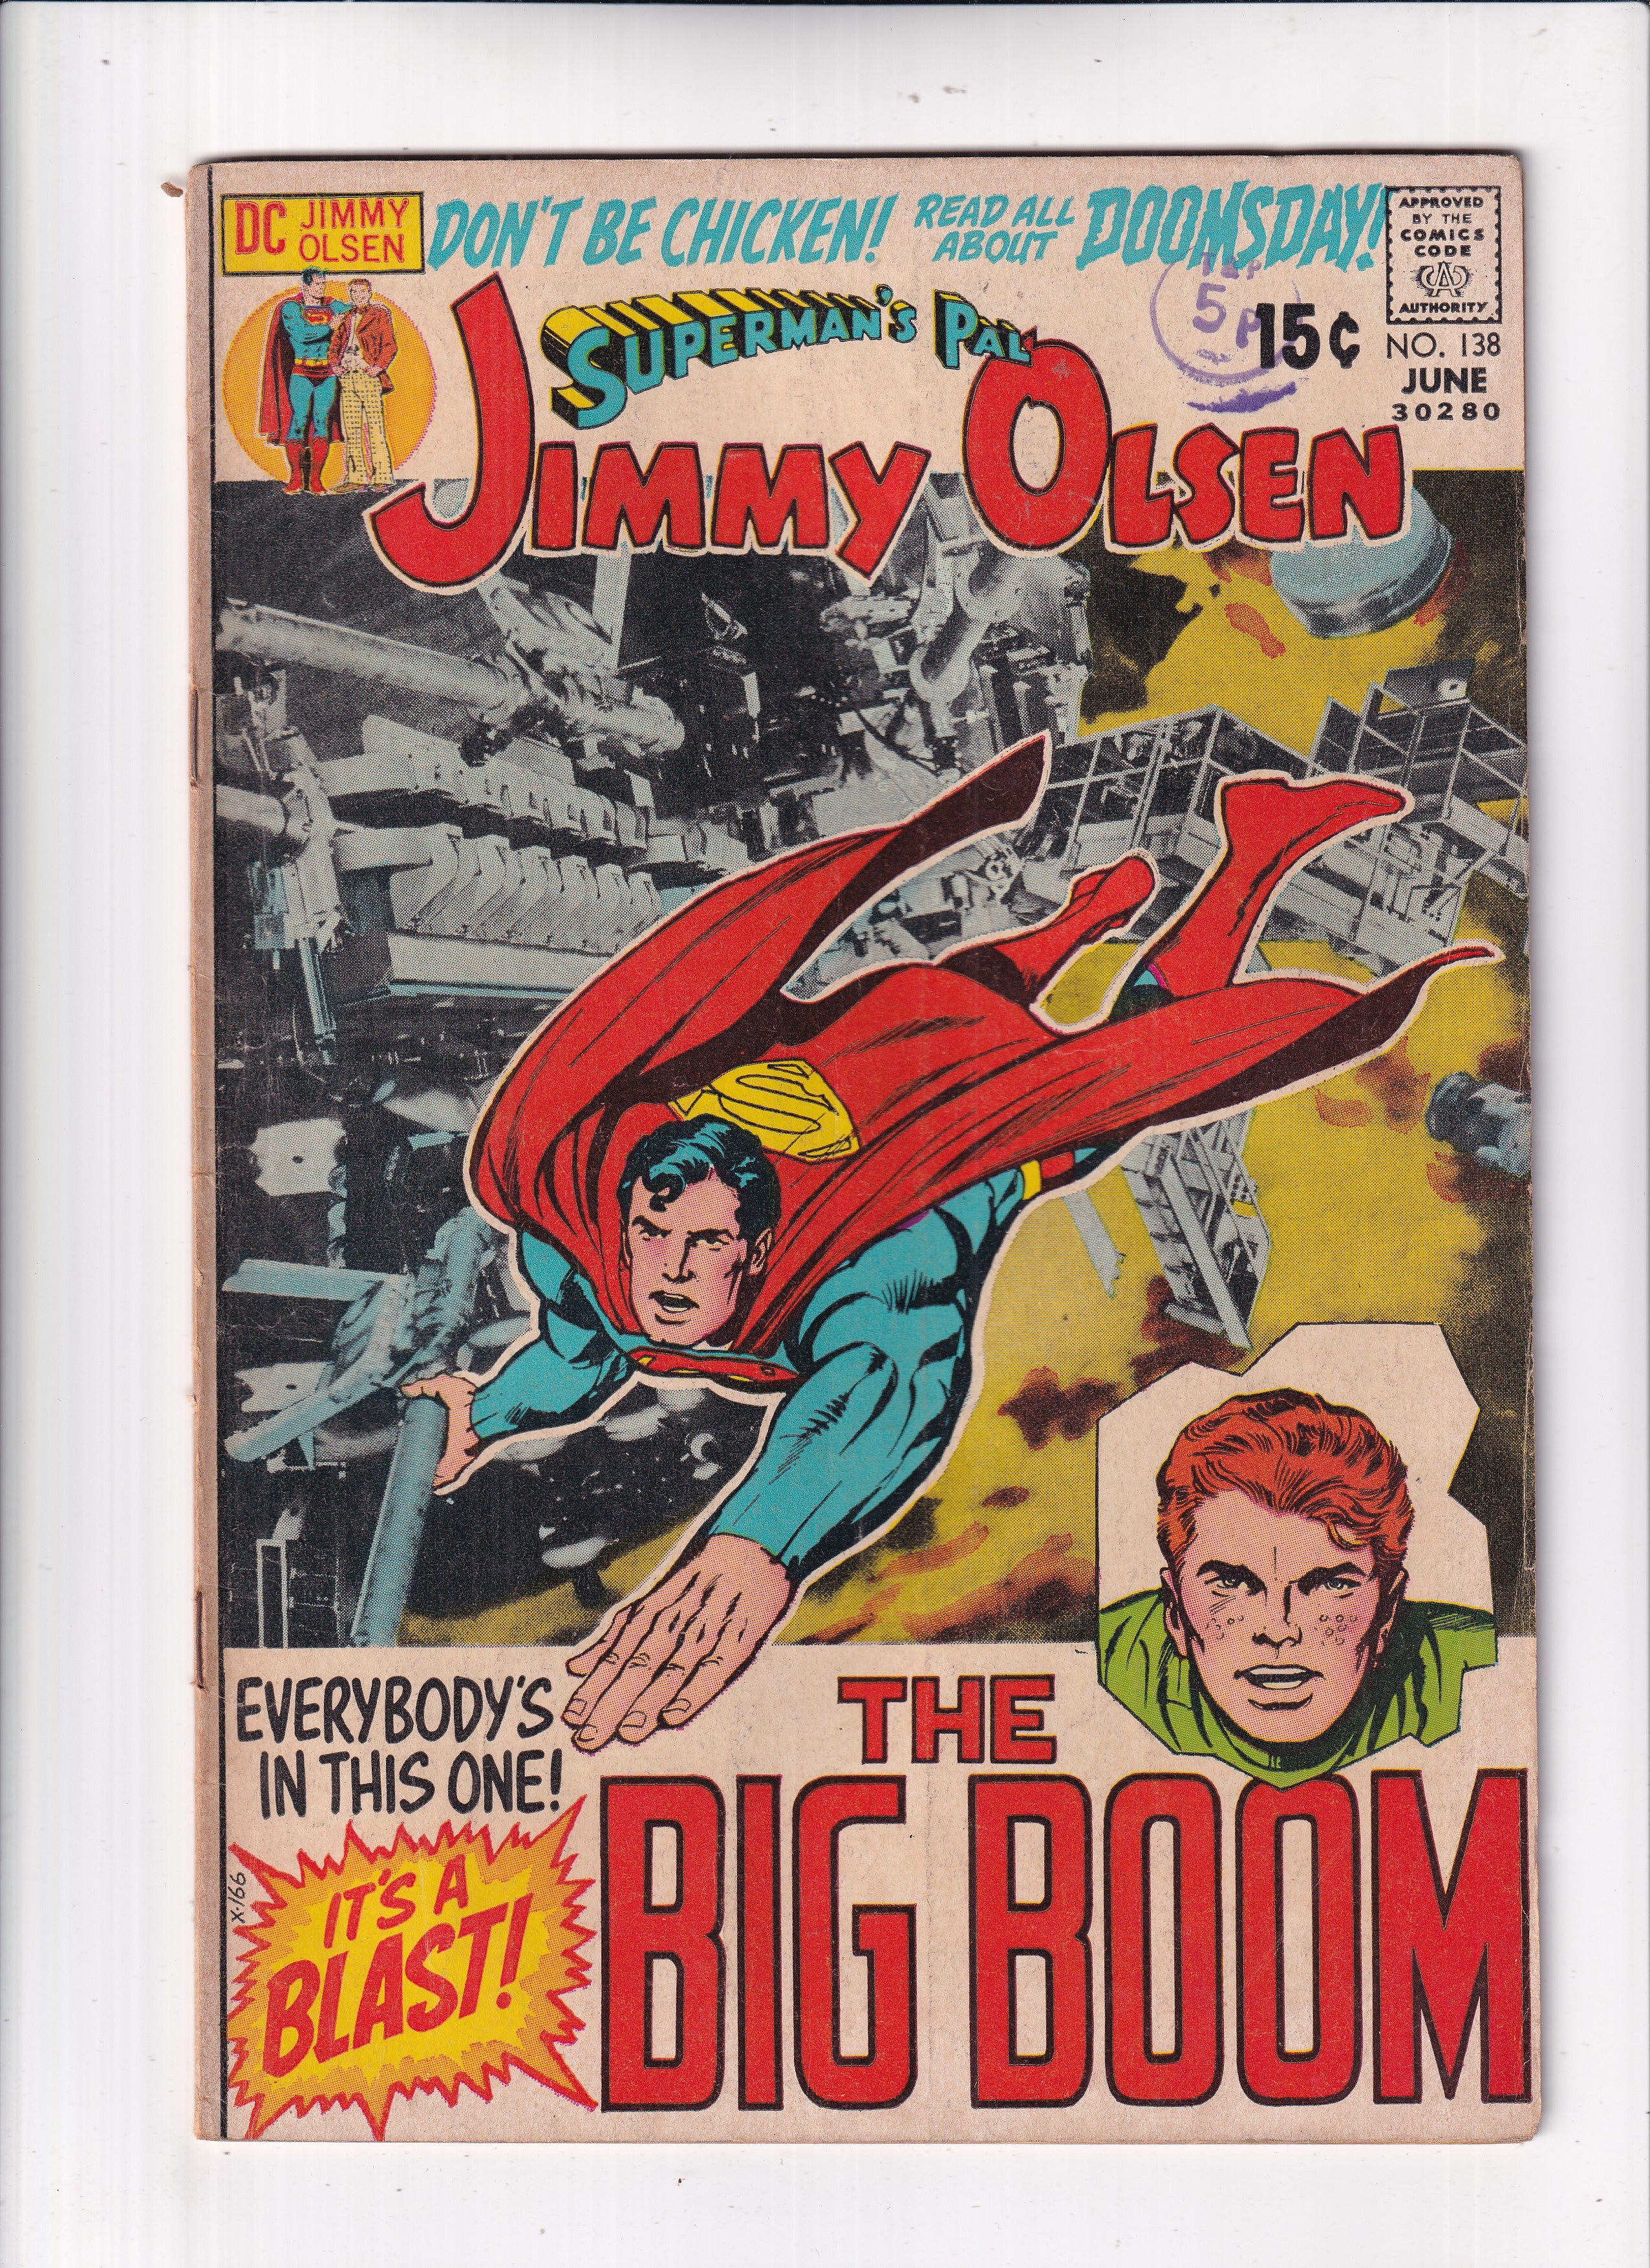 SUPERMAN'S PAL JIMMY OLSEN #138 - Slab City Comics 